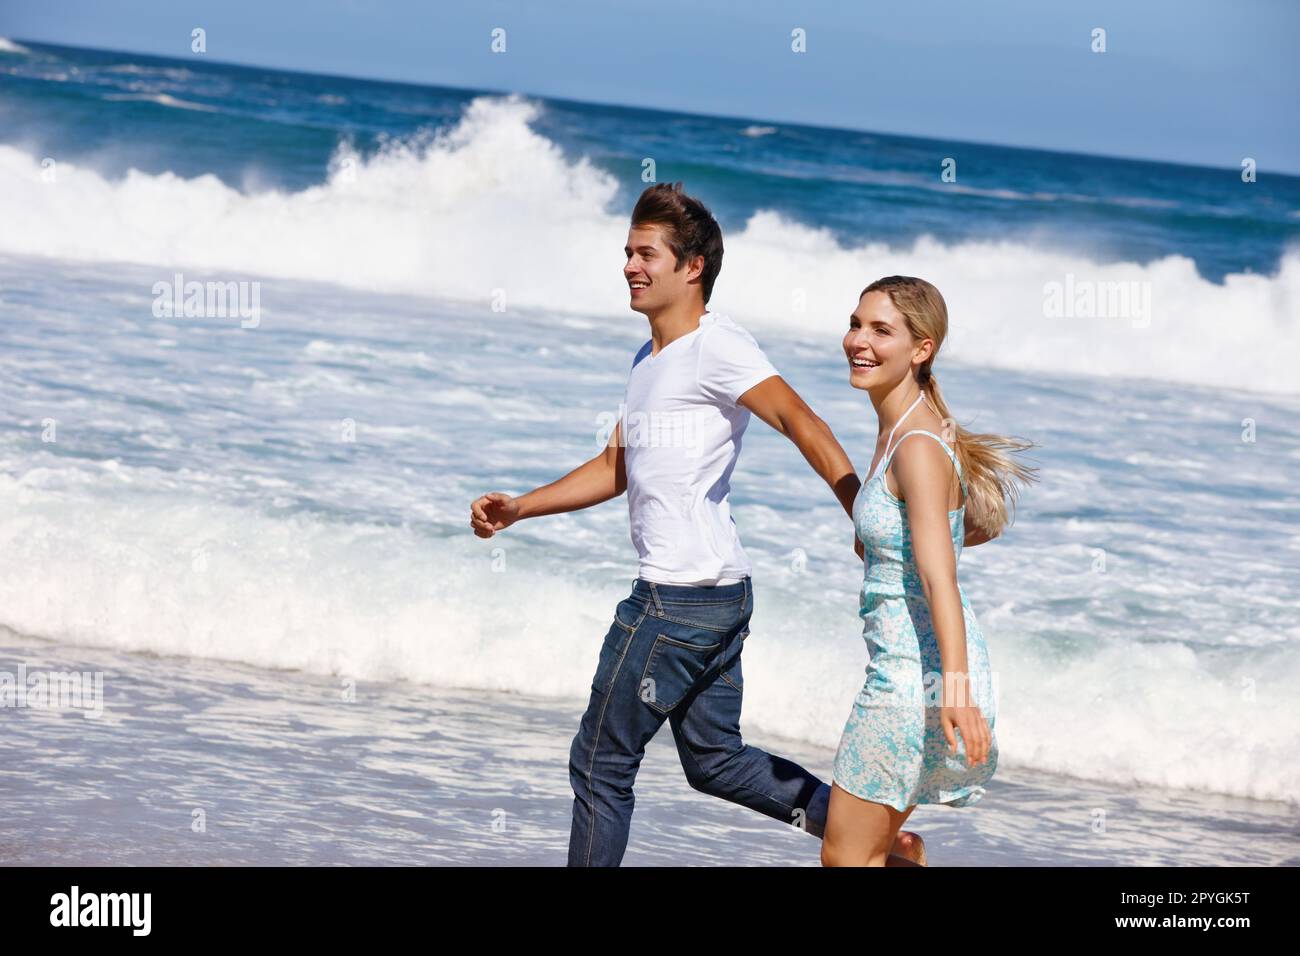 Faisons de cet été un souvenir inoubliable. un jeune couple heureux qui profite d'une promenade le long de la plage. Banque D'Images